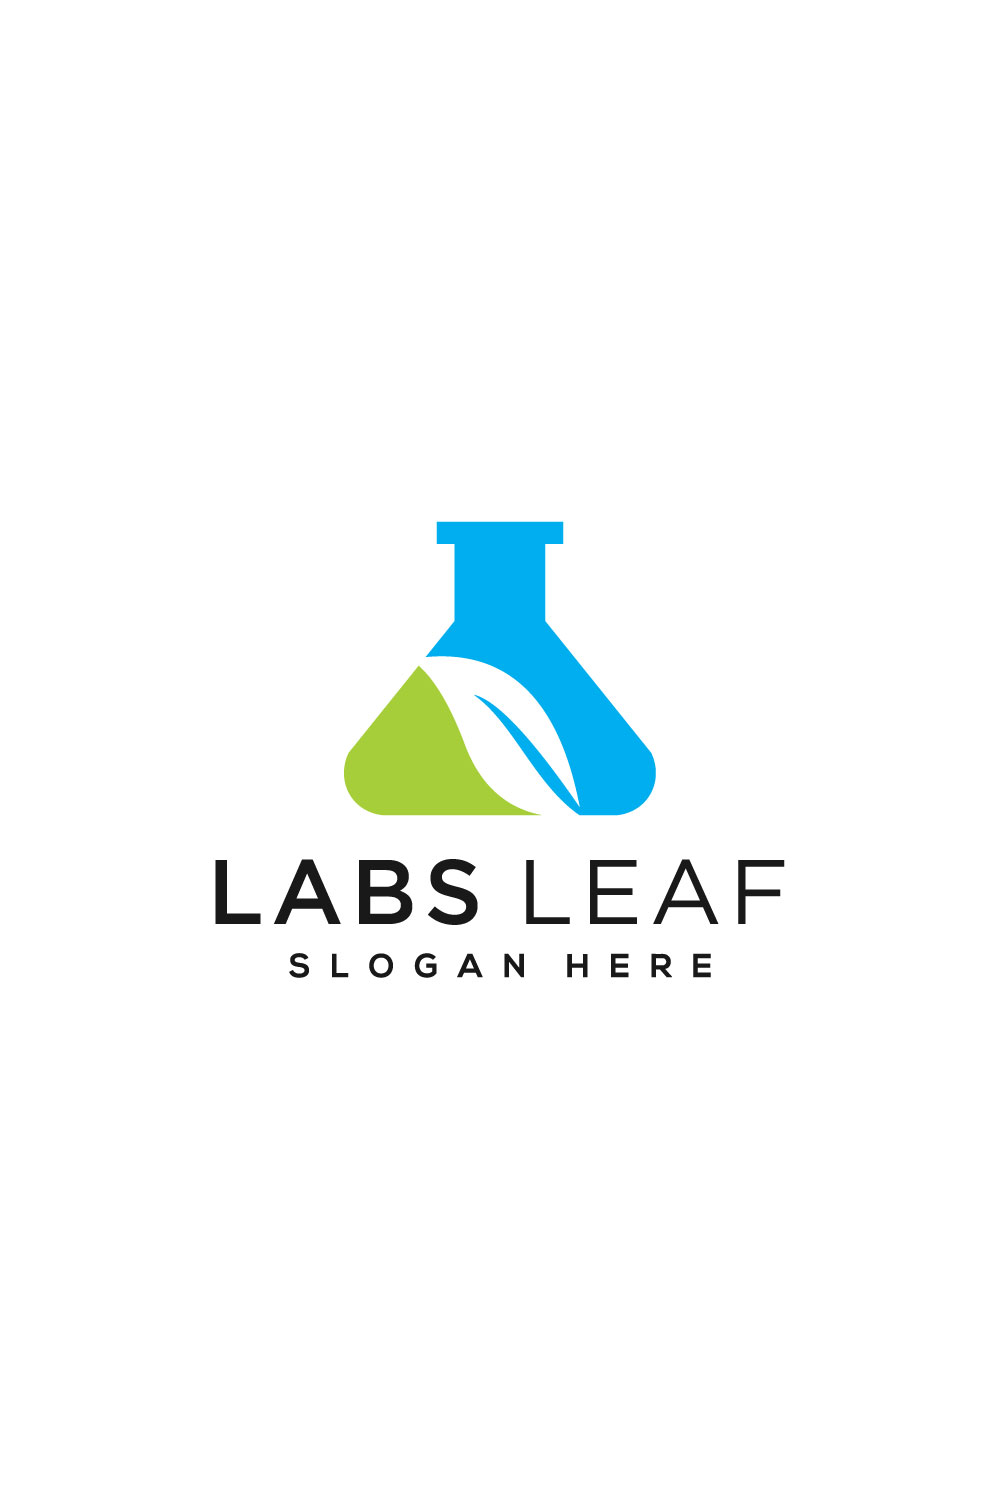 Tube Lab and Leaf Logo Vector Design - Pinterest.